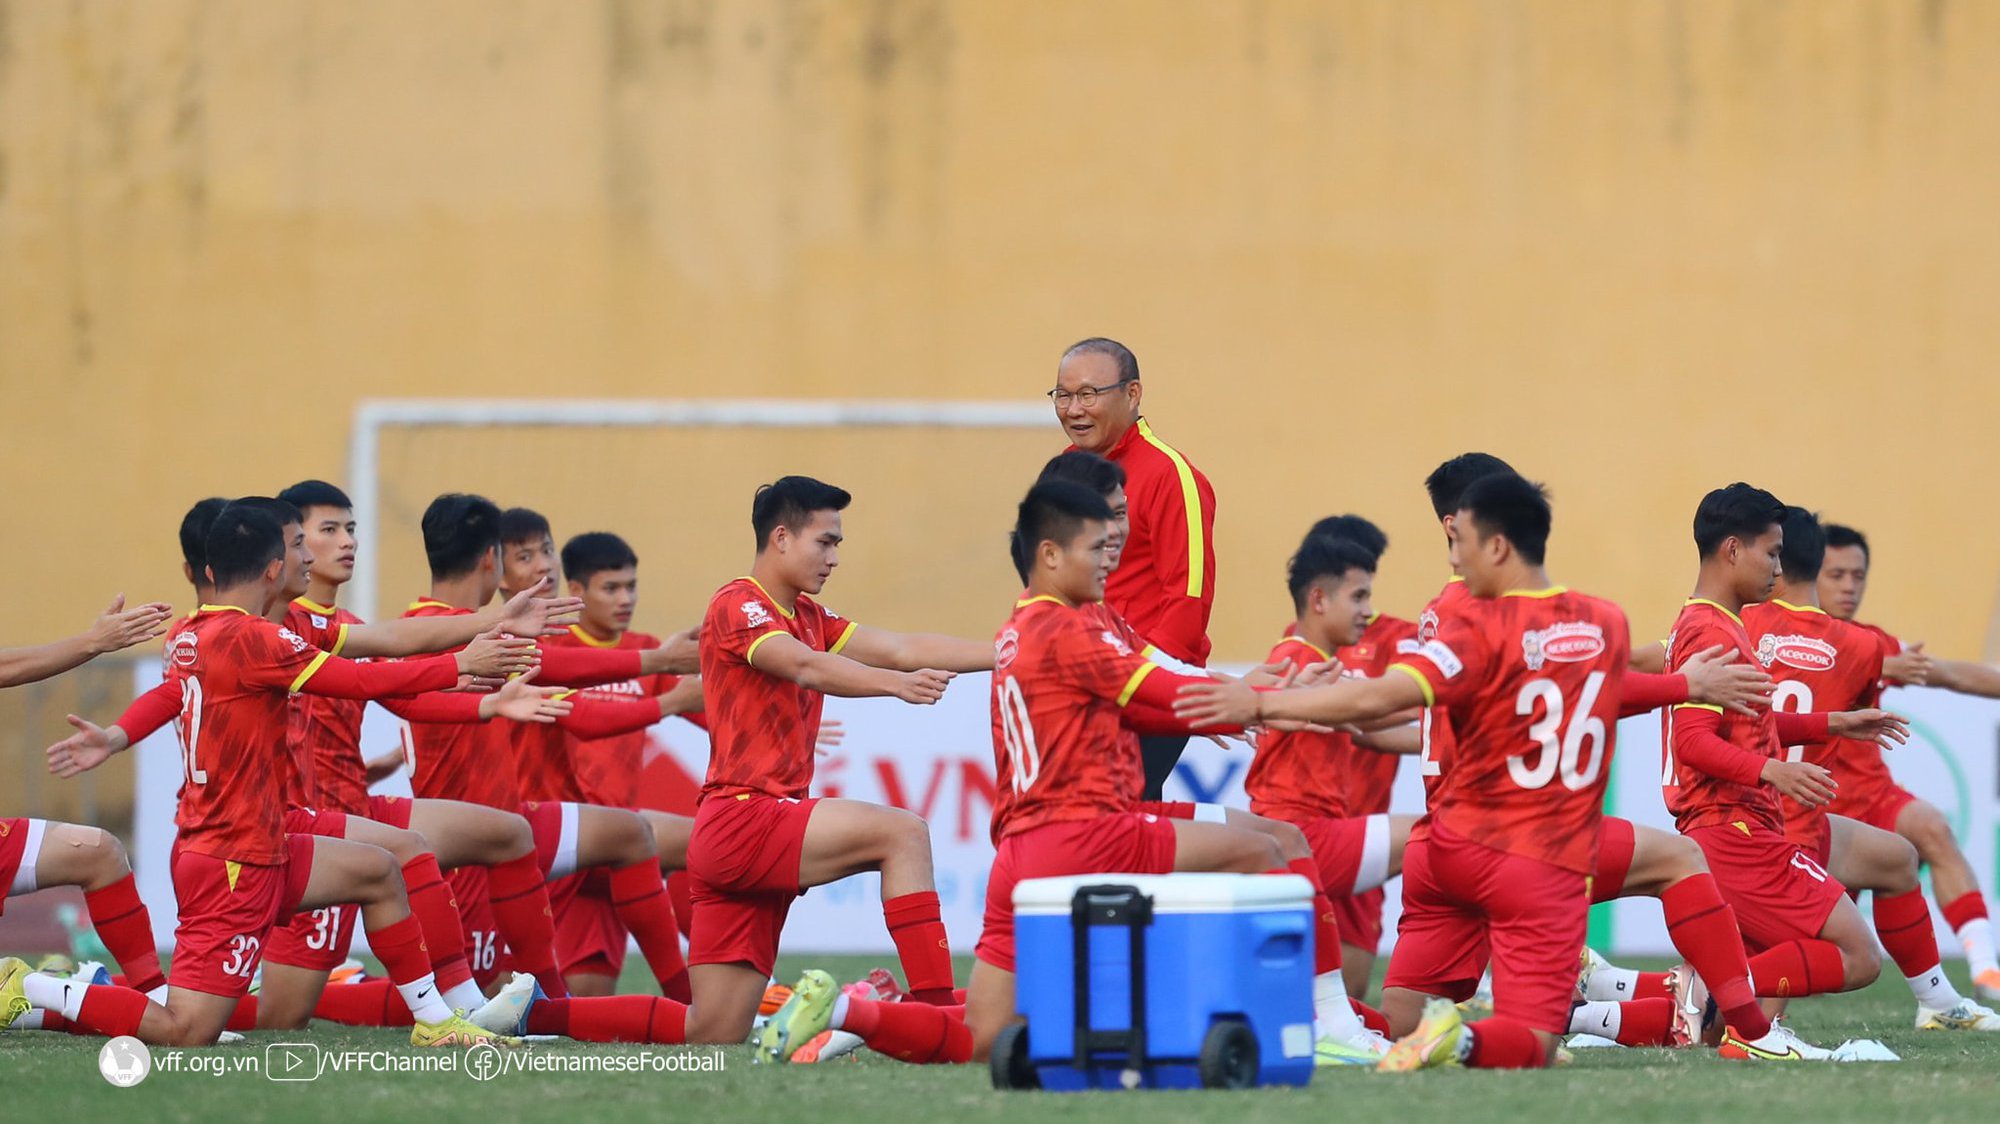 Tin nóng AFF Cup hôm nay 14/12: Tuyển Việt Nam vs Philippines (18h00)